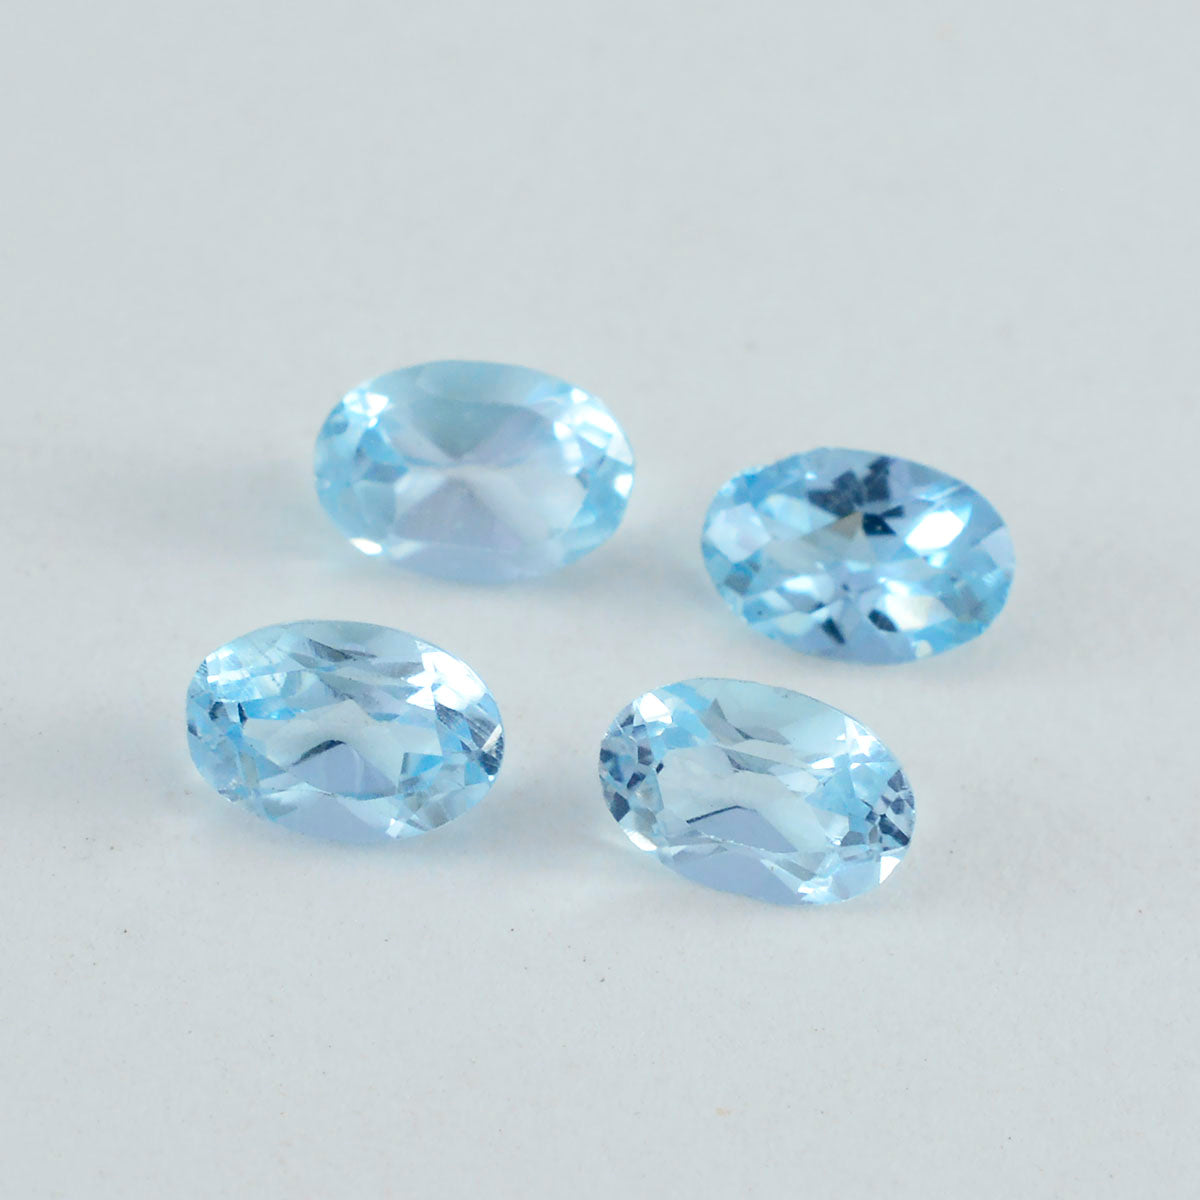 riyogems 1шт натуральный синий топаз ограненный 6х8 мм овальной формы драгоценный камень качества А1